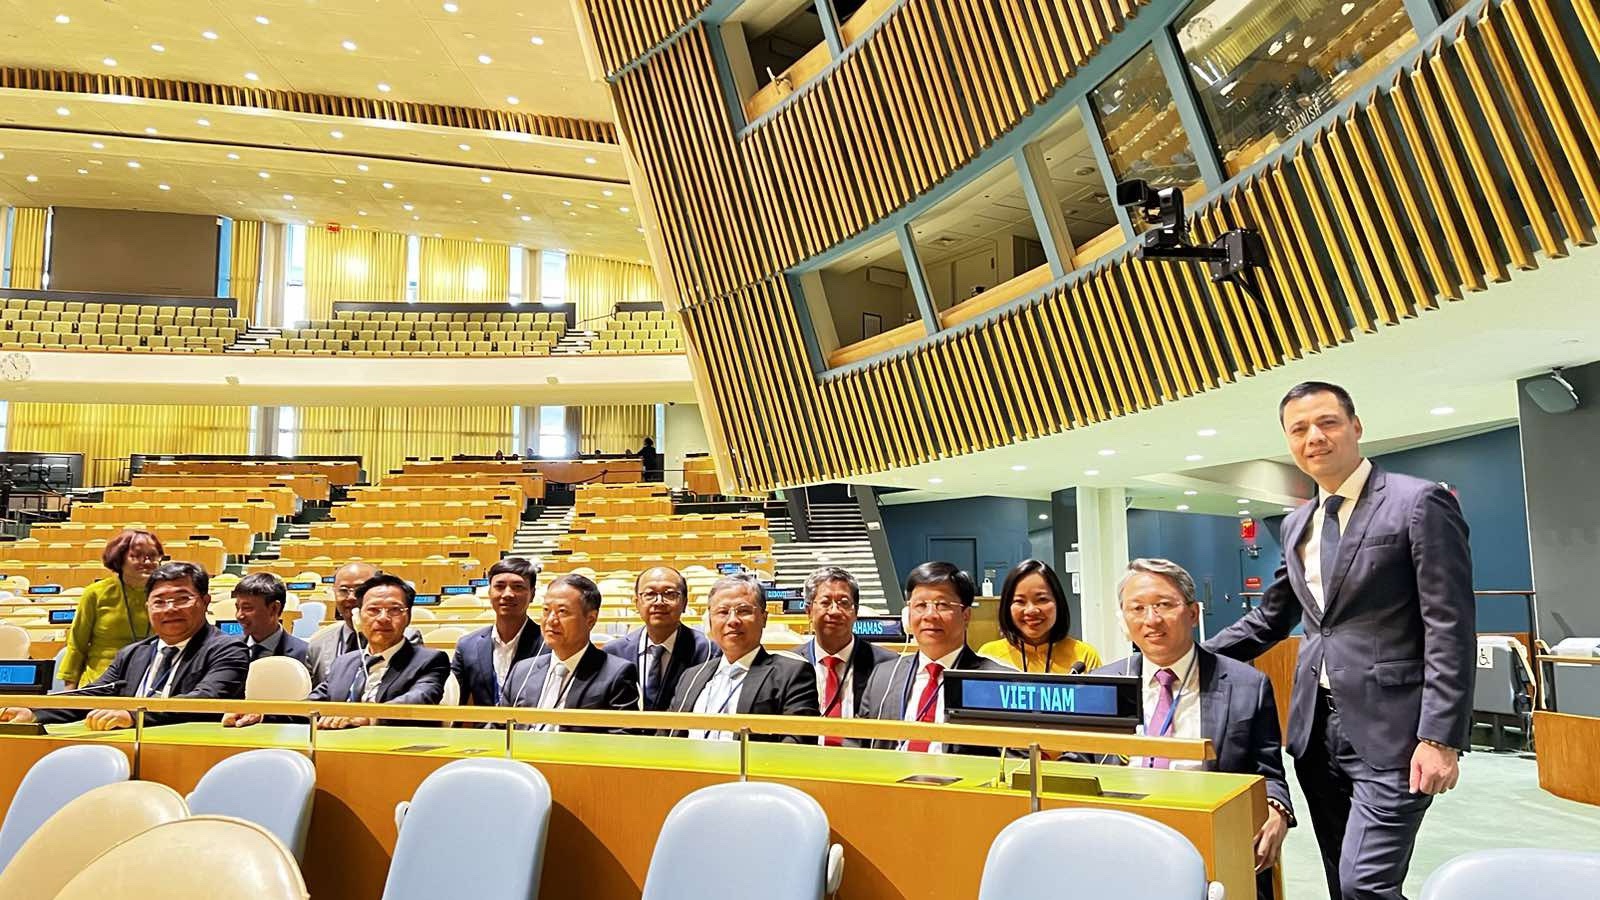 Đoàn chụp ảnh lưu niệm tại phòng  họp Đại hội đồng Liên hiệp quốc.